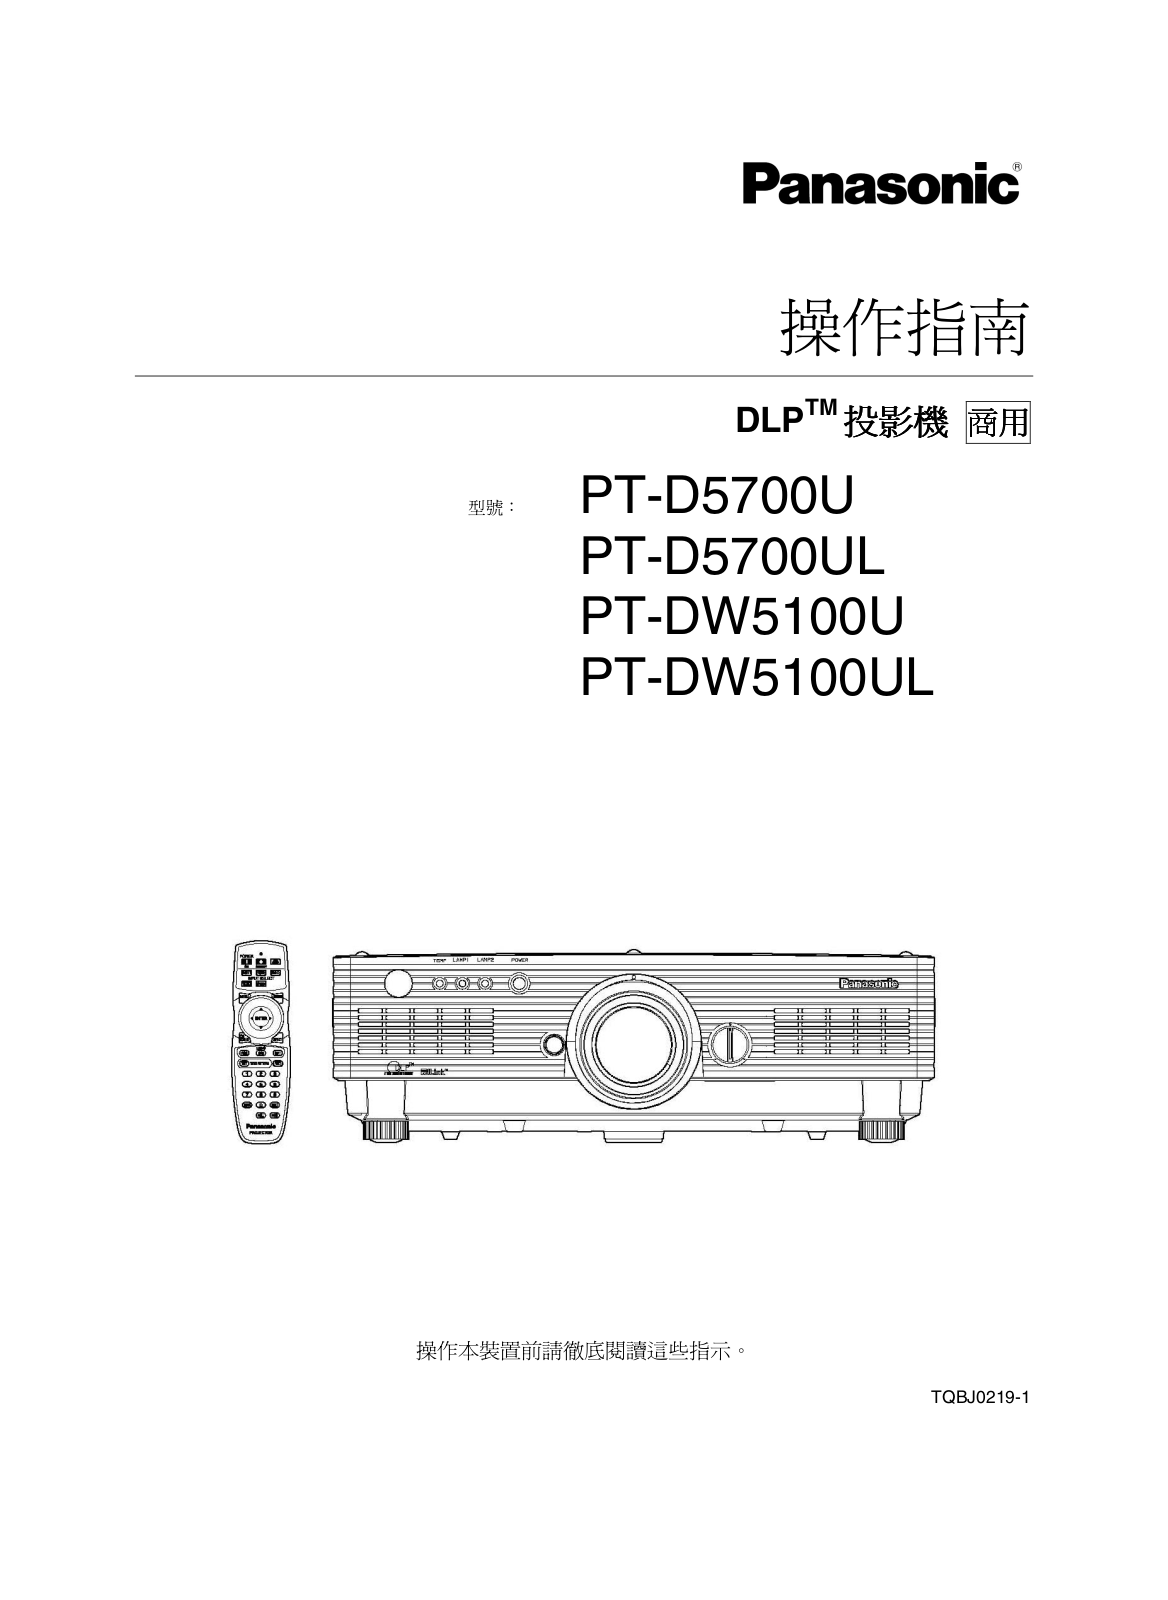 Panasonic PT-D5700U, PT-D5700UL, PT-DW5100U, PT-DW5100UL User Manual